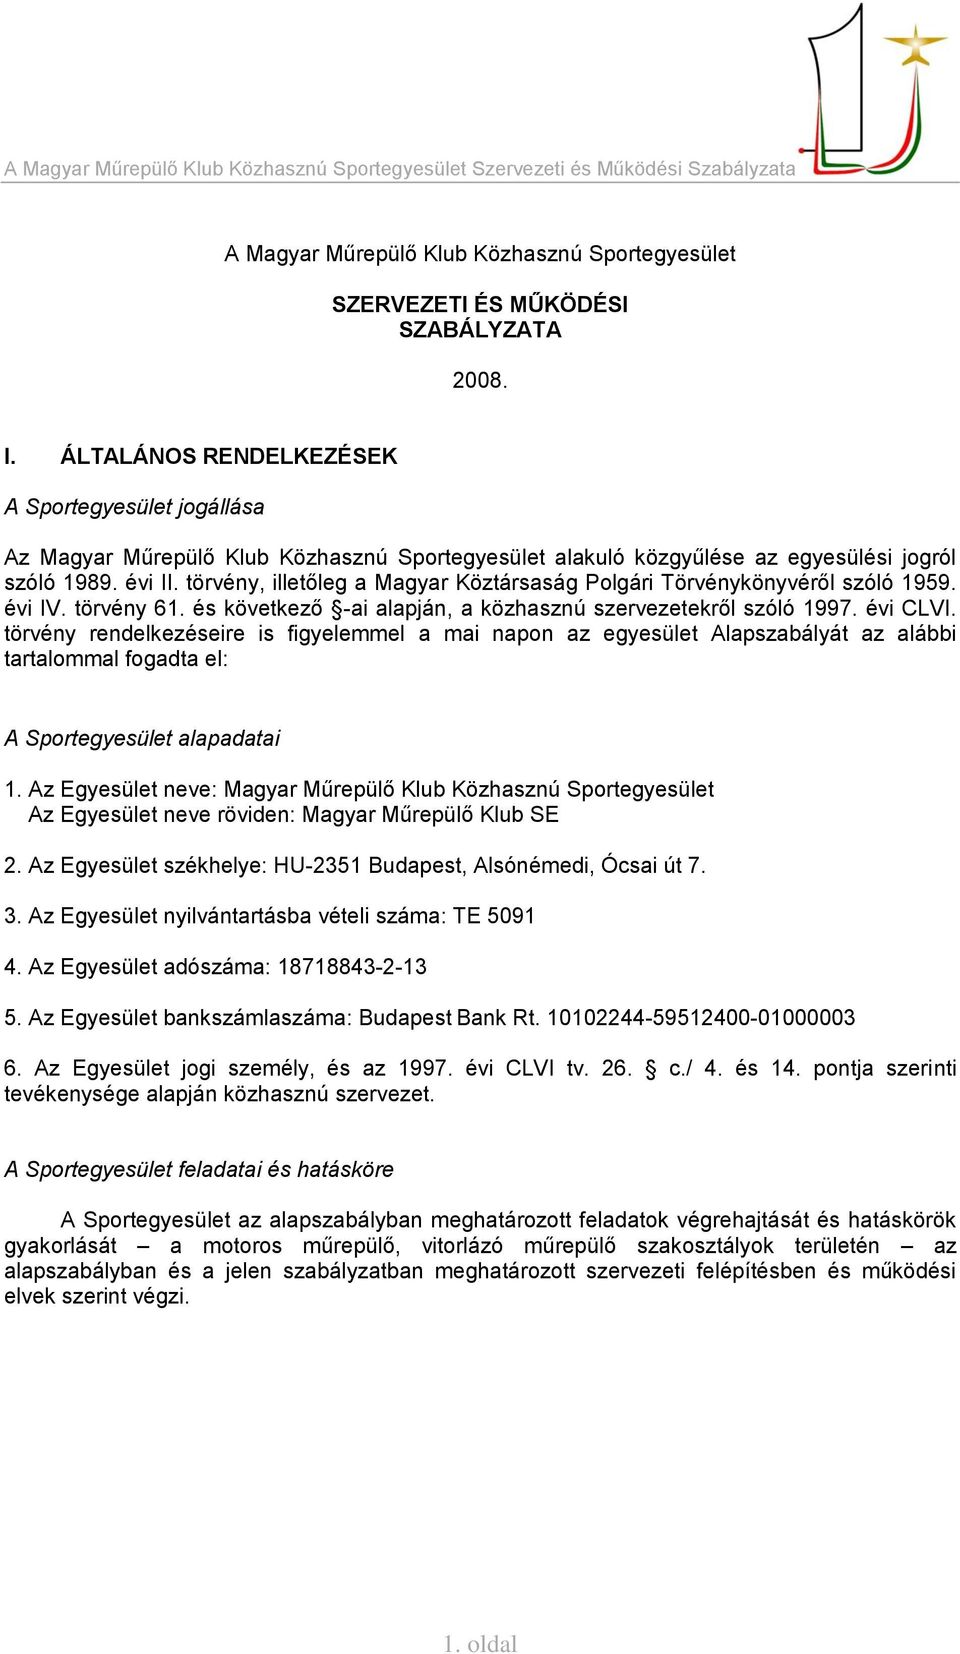 törvény, illetőleg a Magyar Köztársaság Polgári Törvénykönyvéről szóló 1959. évi IV. törvény 61. és következő -ai alapján, a közhasznú szervezetekről szóló 1997. évi CLVI.